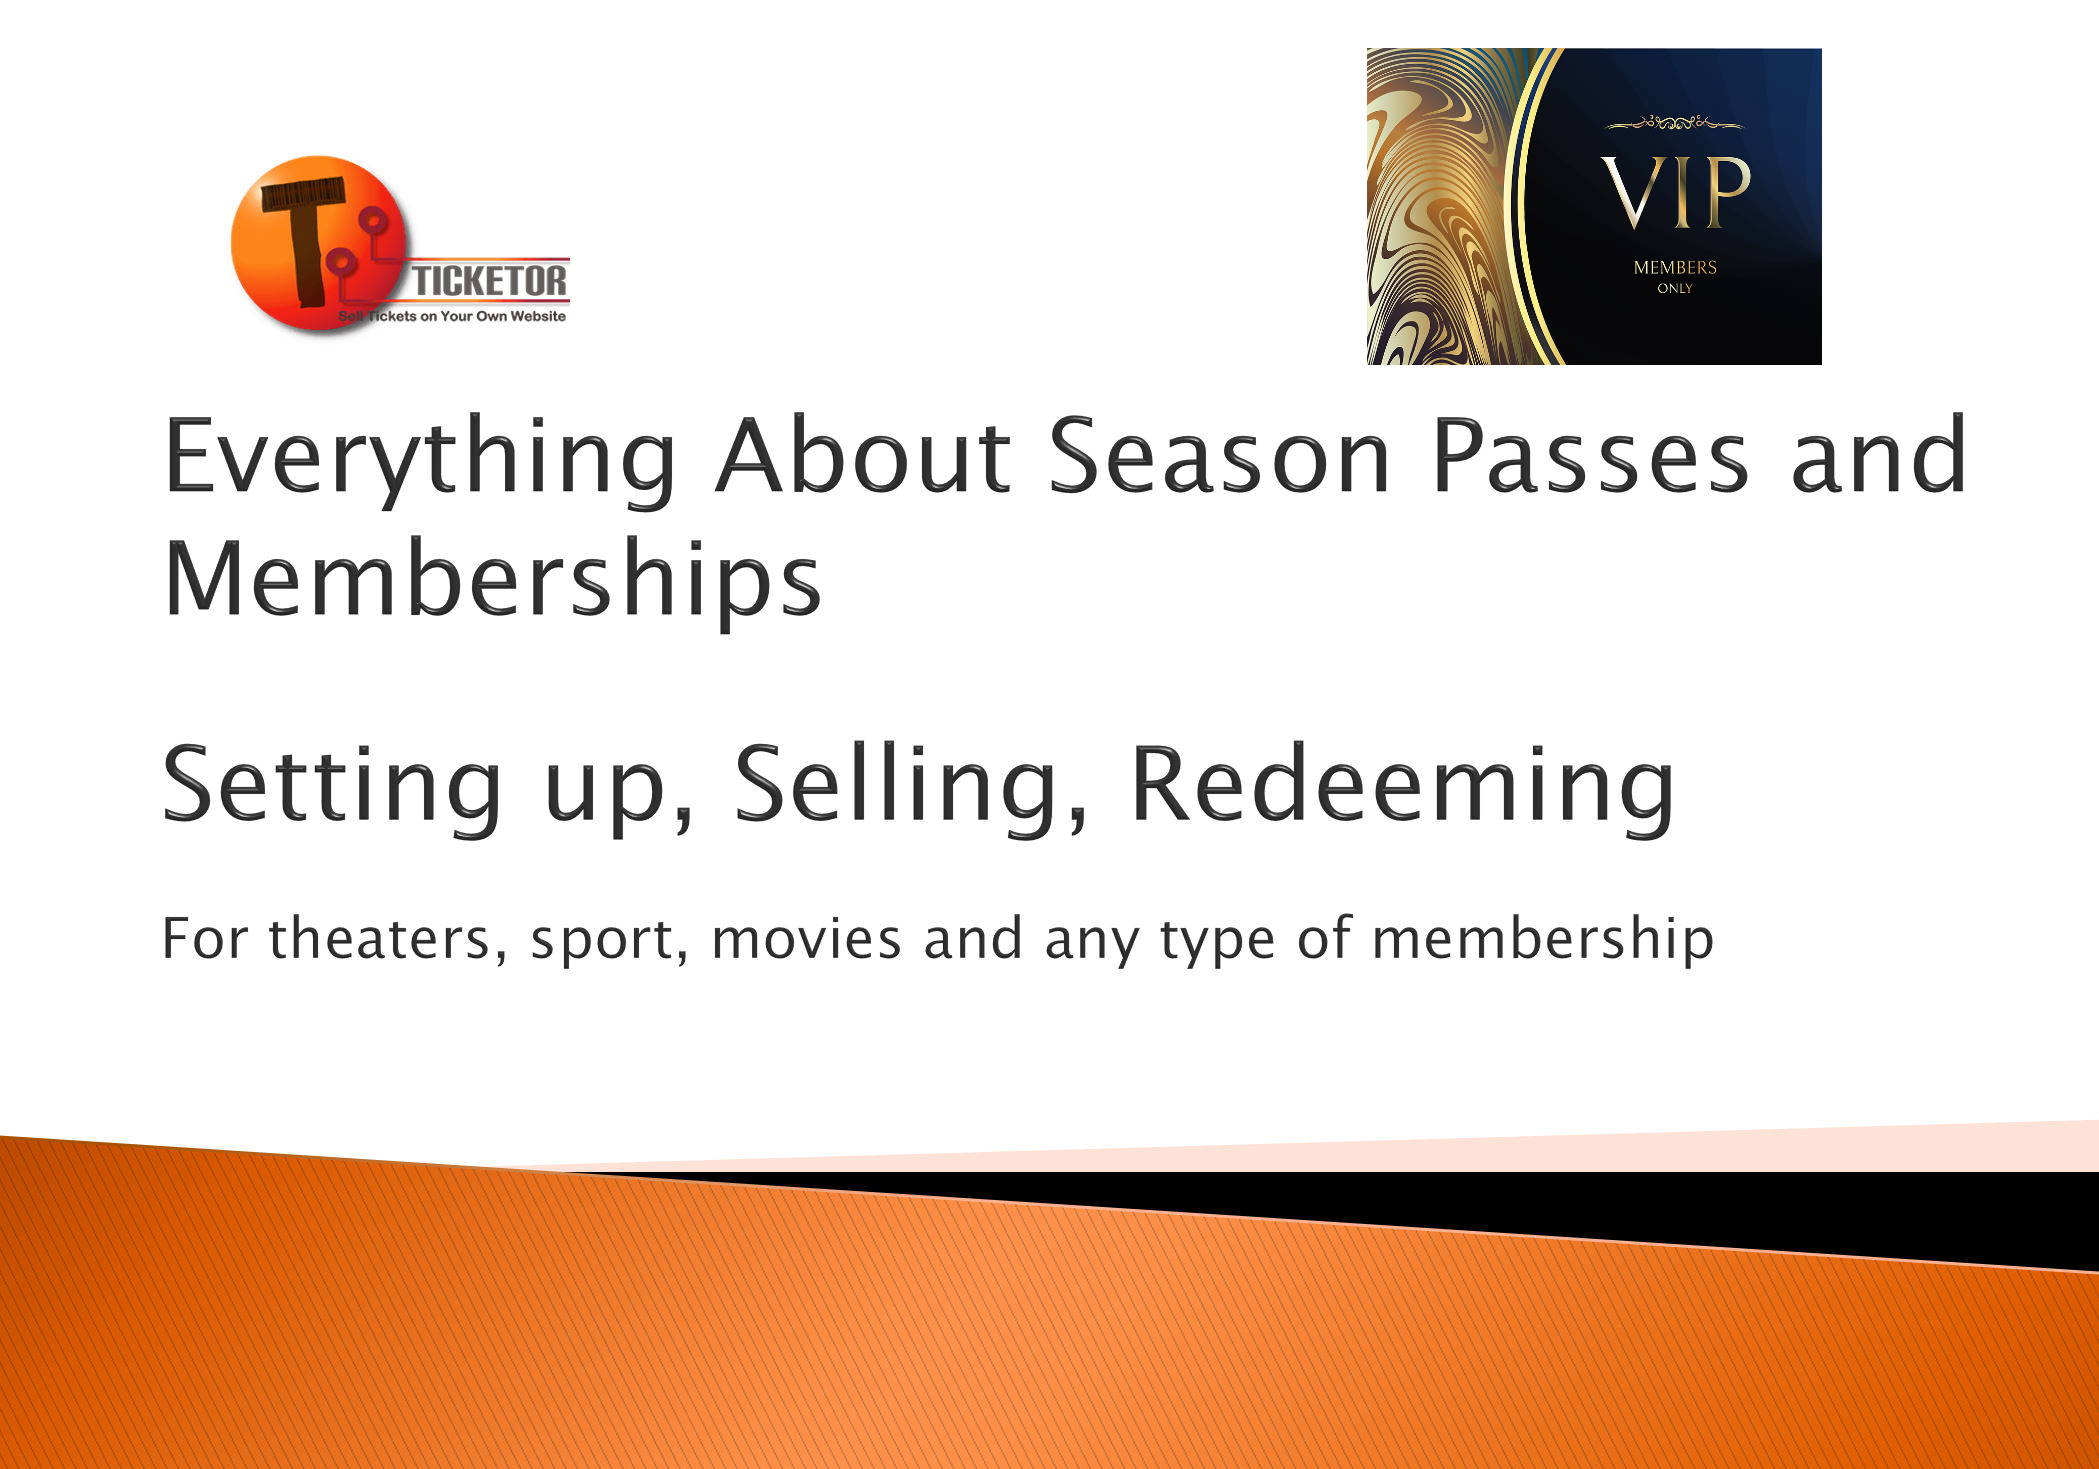 كل ما يتعلق بالتذاكر الموسمية والعضويات للمسارح والرياضة: الإعداد والبيع والاسترداد